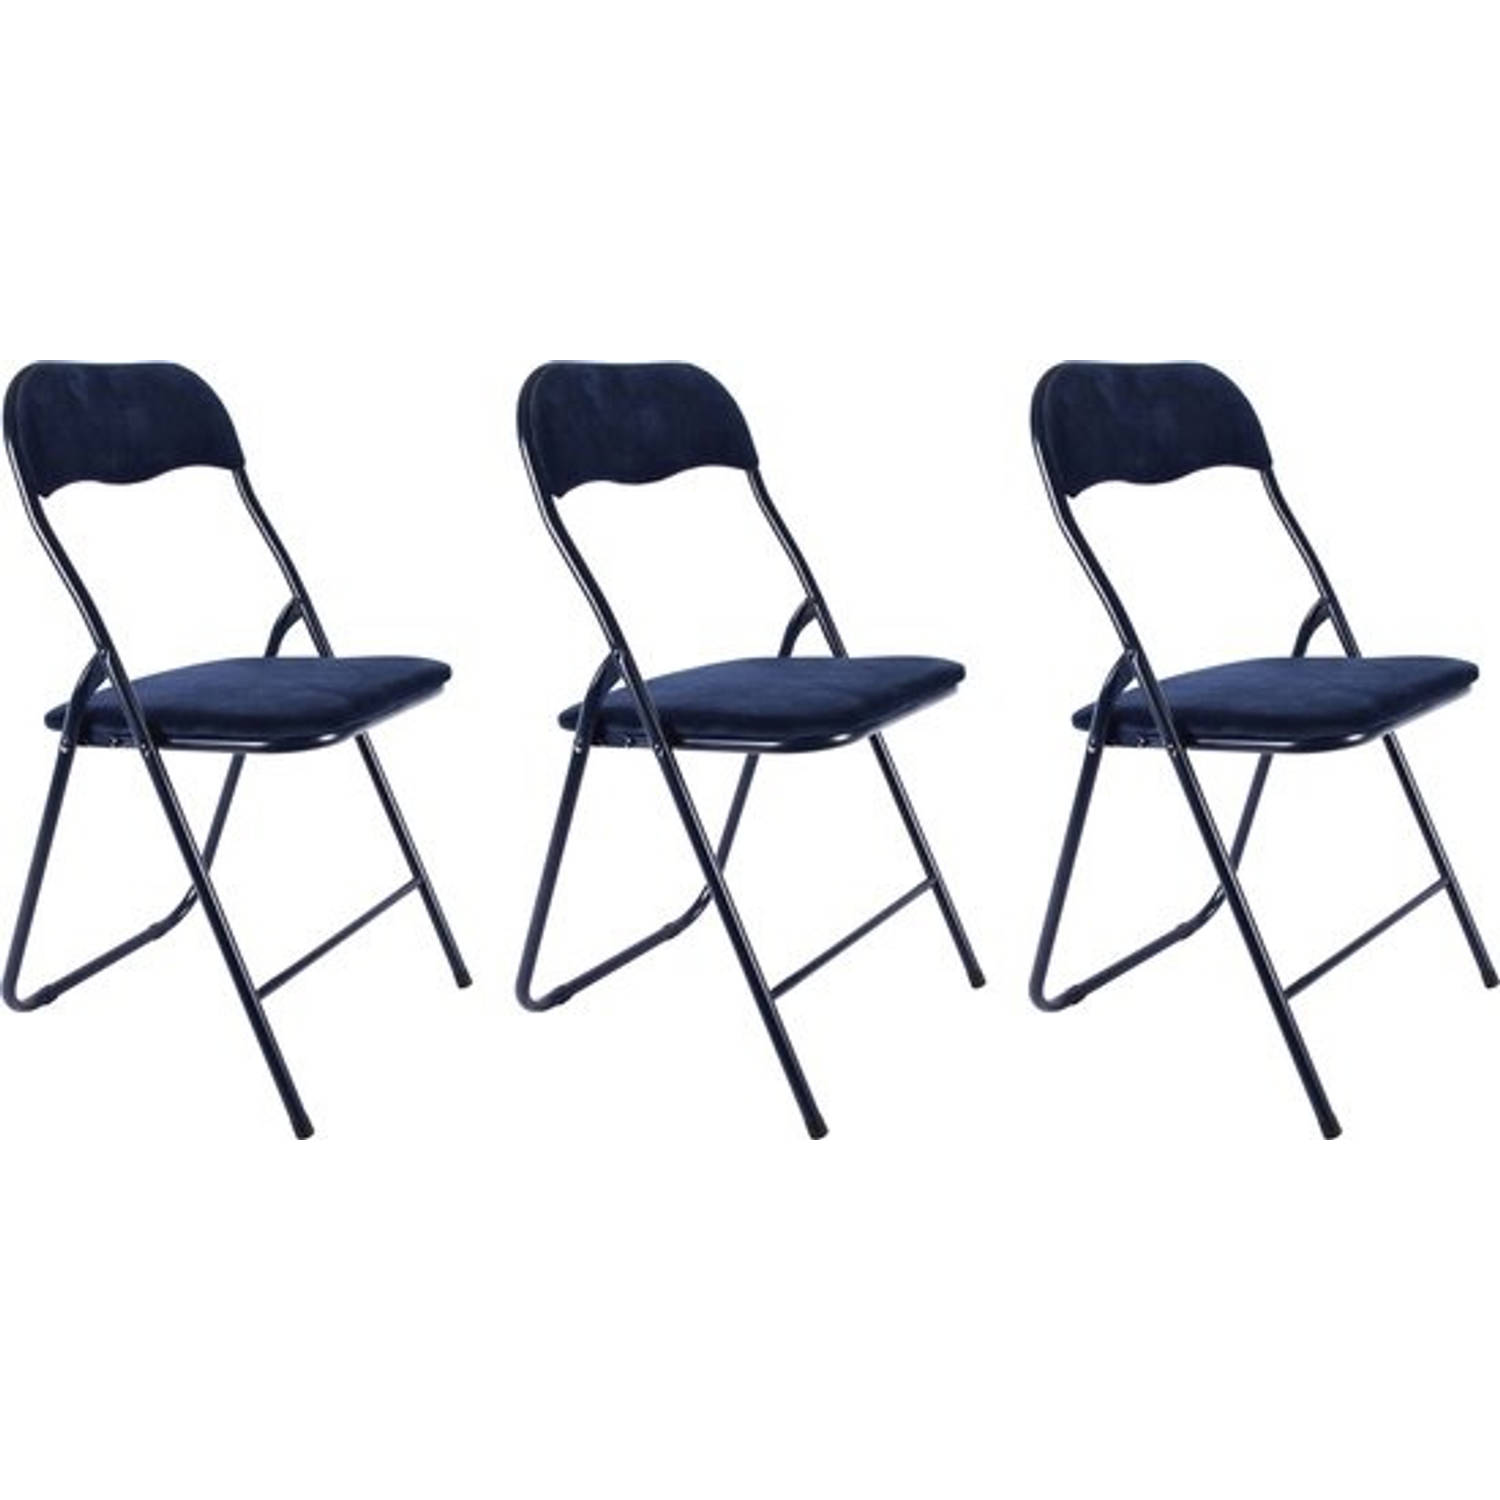 3x Klapstoel met zithoogte van 43 cml Vouwstoel velvet zitvlak en rug bekleed donkerblauw